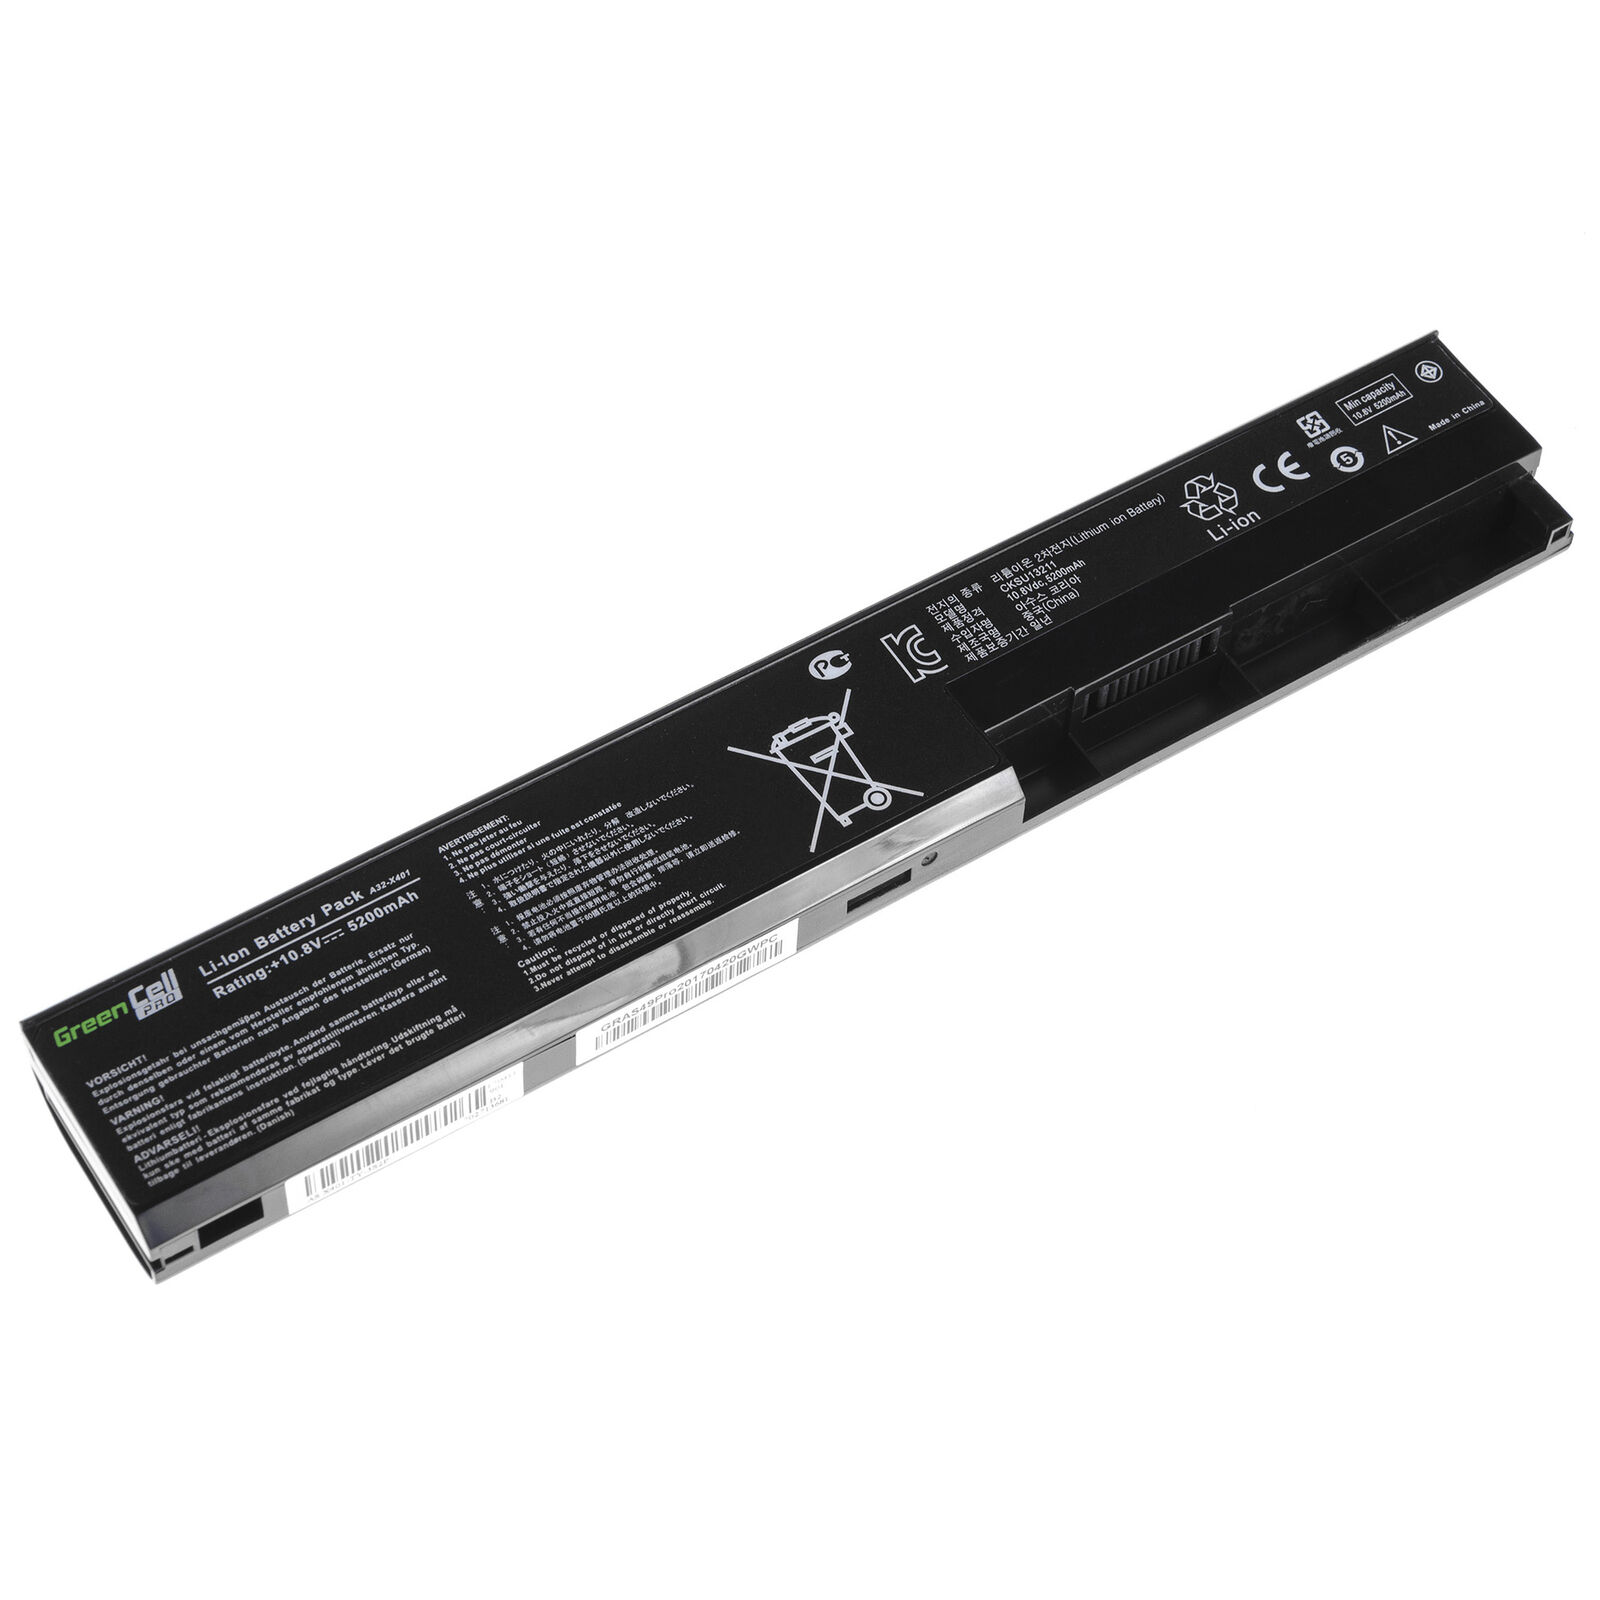 Asus X301 X301A X301U X501 X501A X501U A31-X401 A41-X401 kompatibelt batterier - Trykk på bildet for å lukke